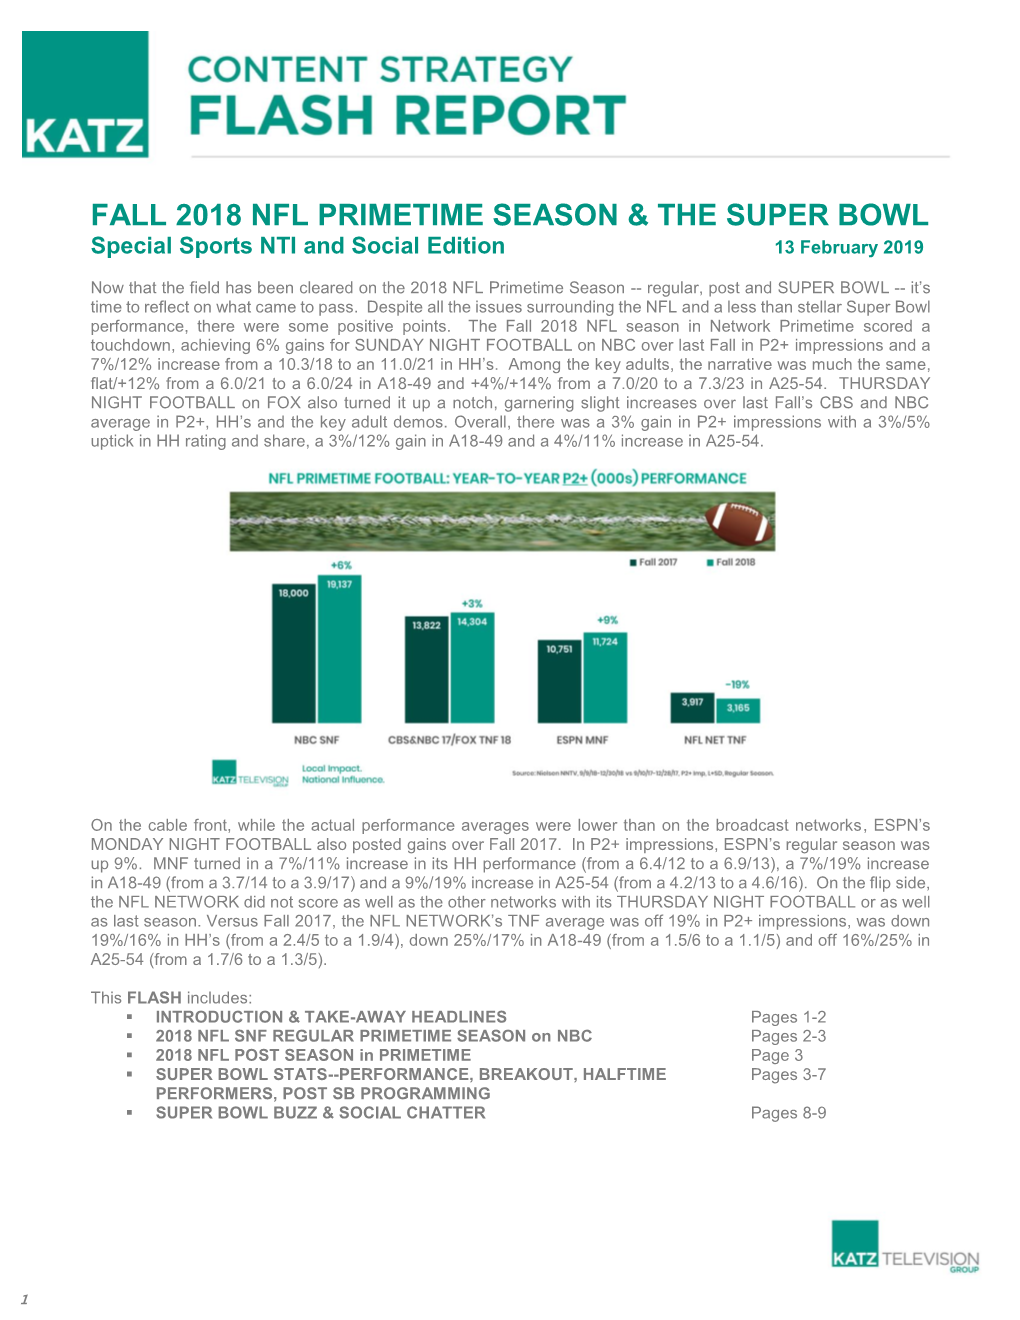 Fall 2018 Nfl Primetime Season & the Super Bowl